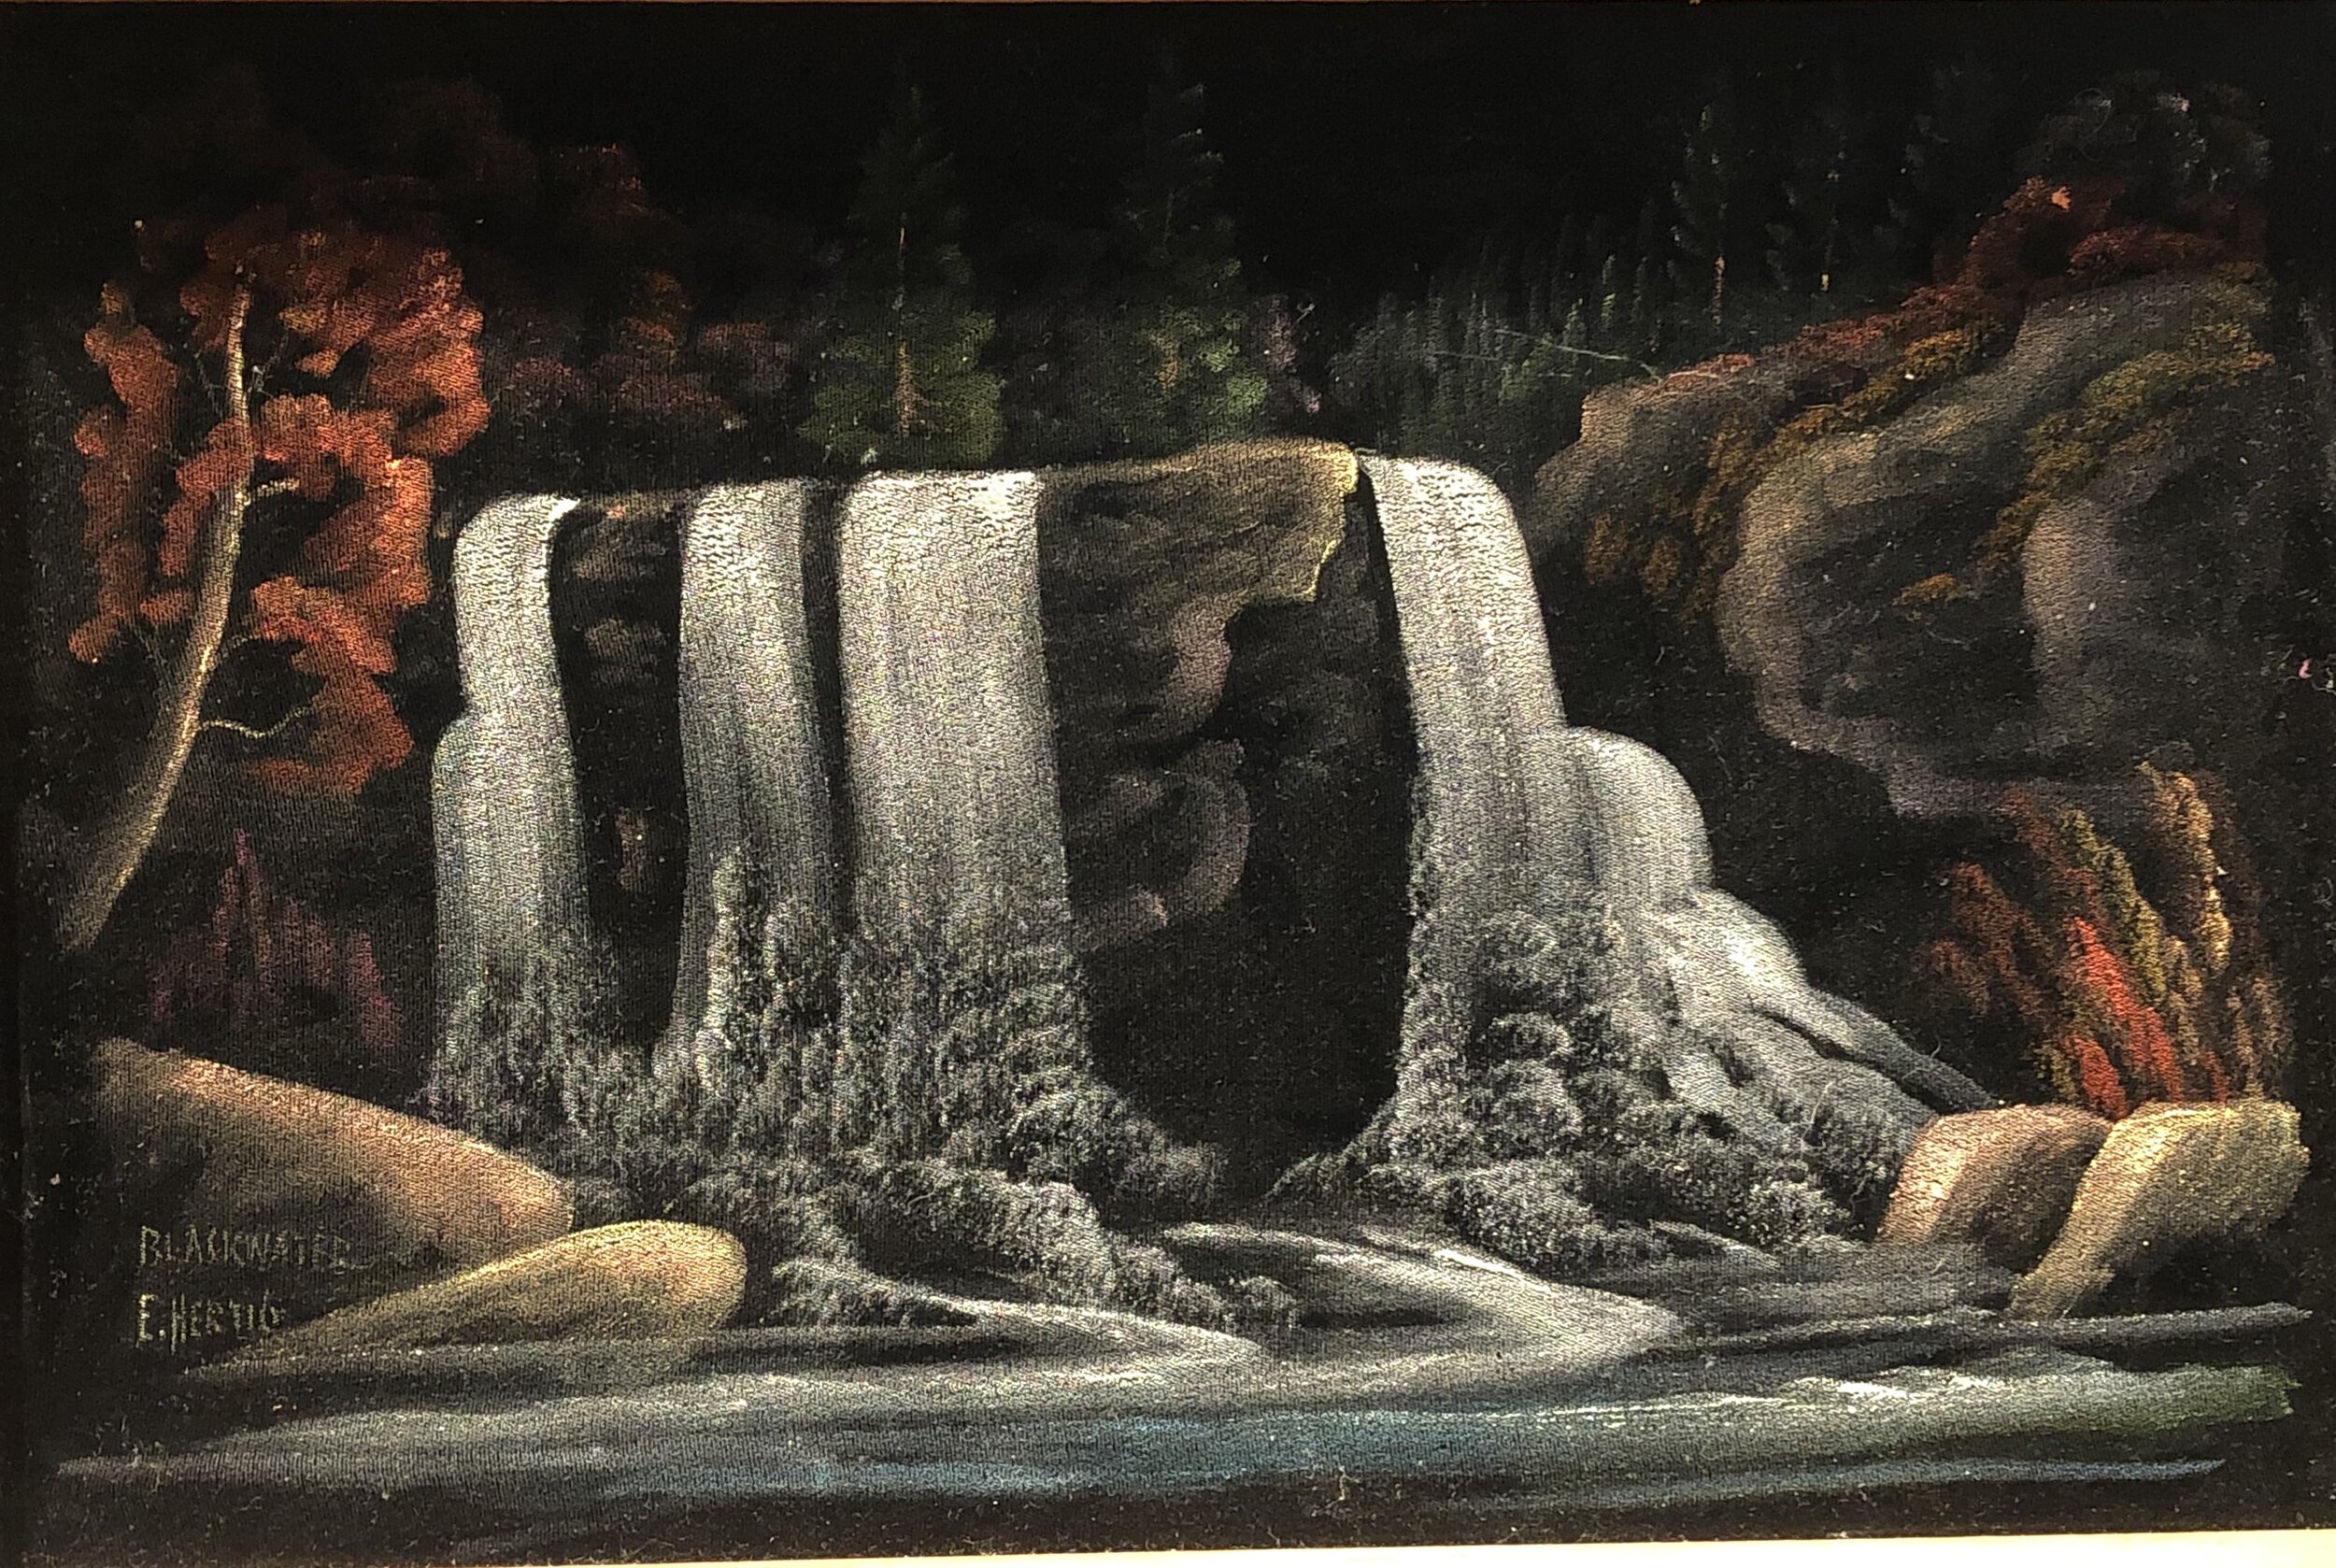 "Blackwater Falls on Black Velvet" by Ernest Hertig